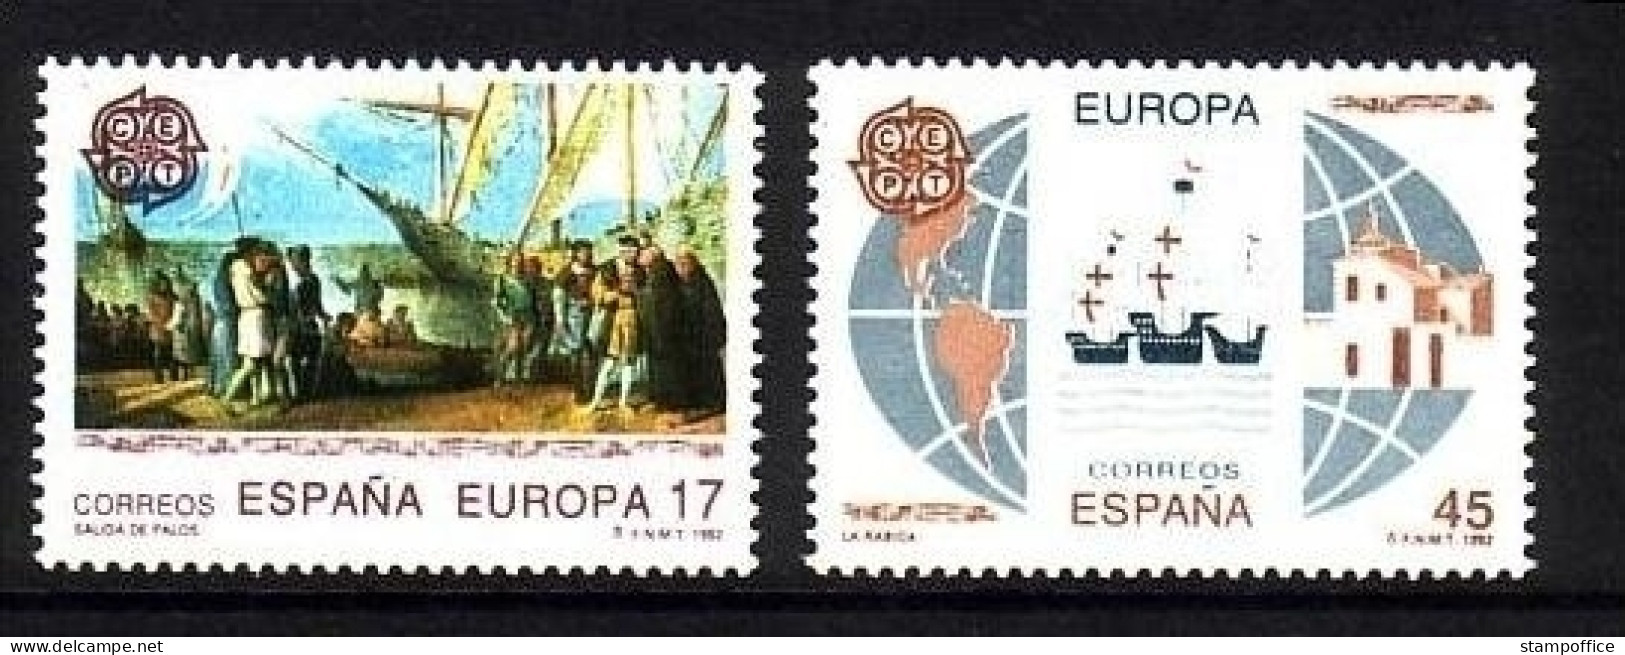 SPANIEN MI-NR. 3064-3065 POSTFRISCH(MINT) EUROPA 1992 ENTDECKUNG AMERIKAS COLUMBUS SCHIFFE - 1992